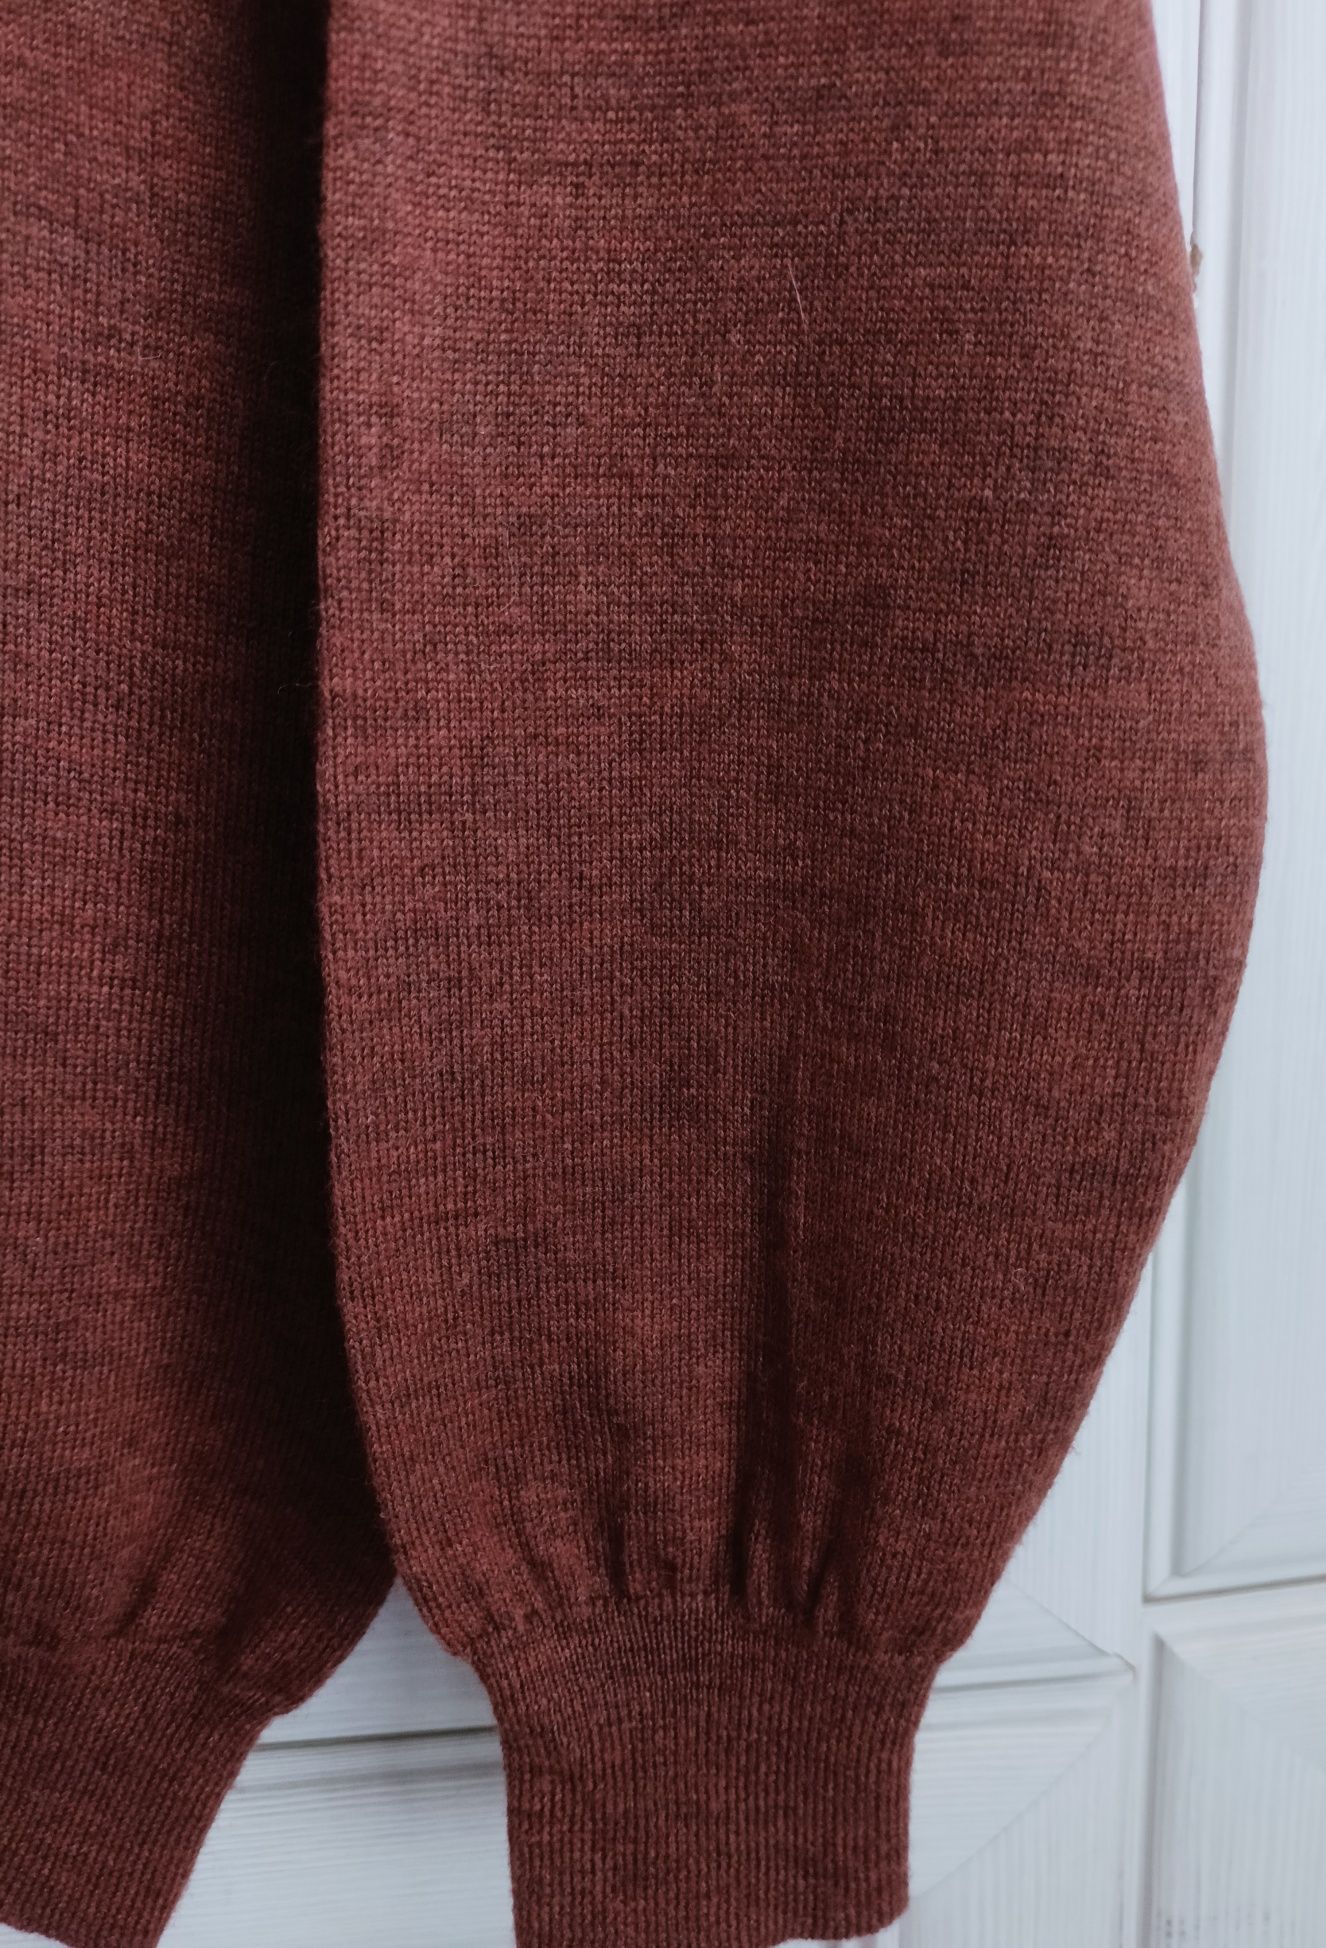 S 36 XS 34 oversize brązowy sweter wełniany 100% merino jak nowy